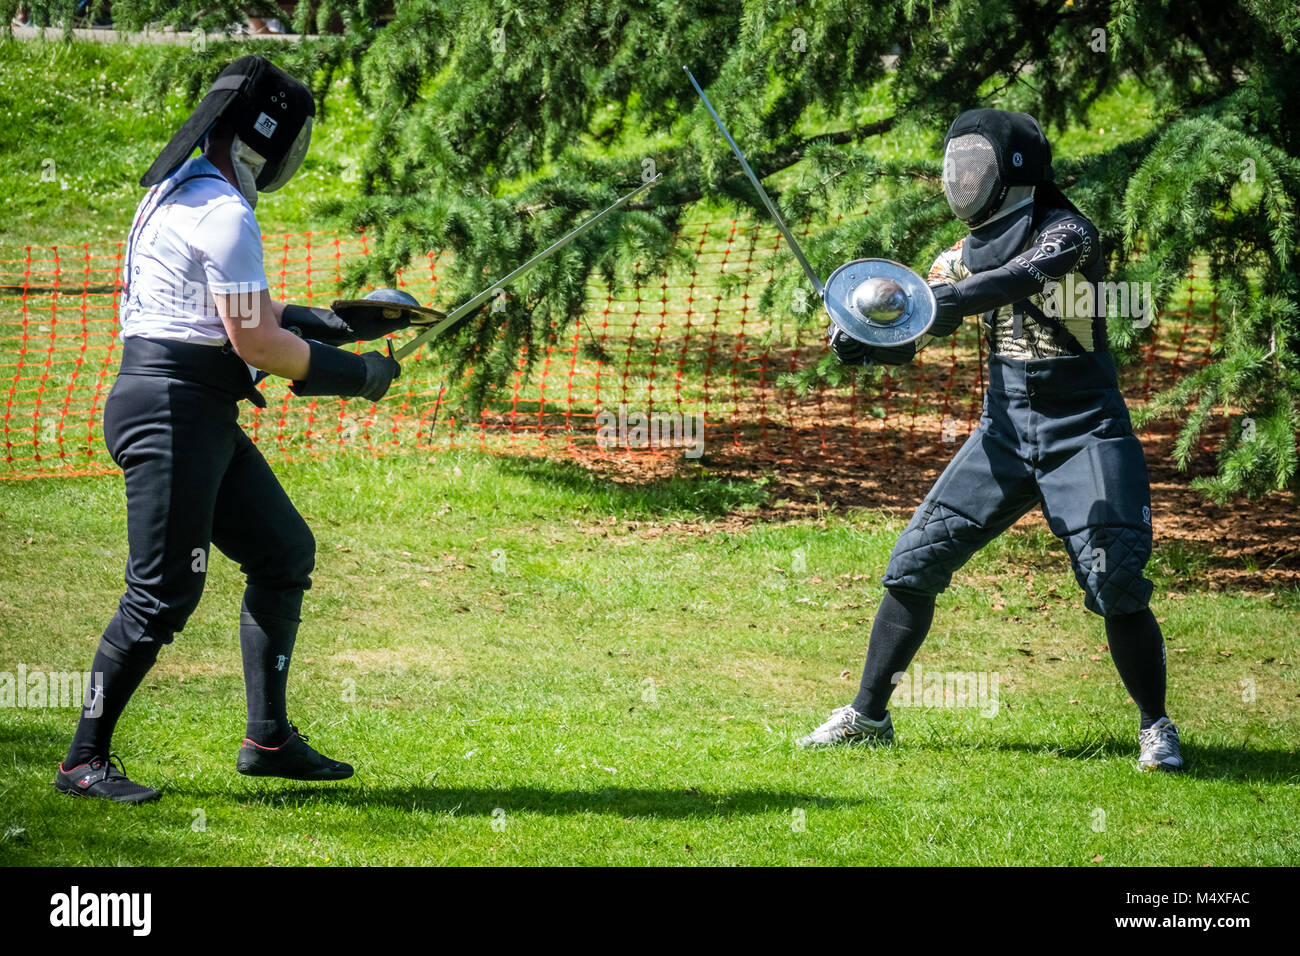 Hombres luchando con espadas fotografías e imágenes de - Alamy